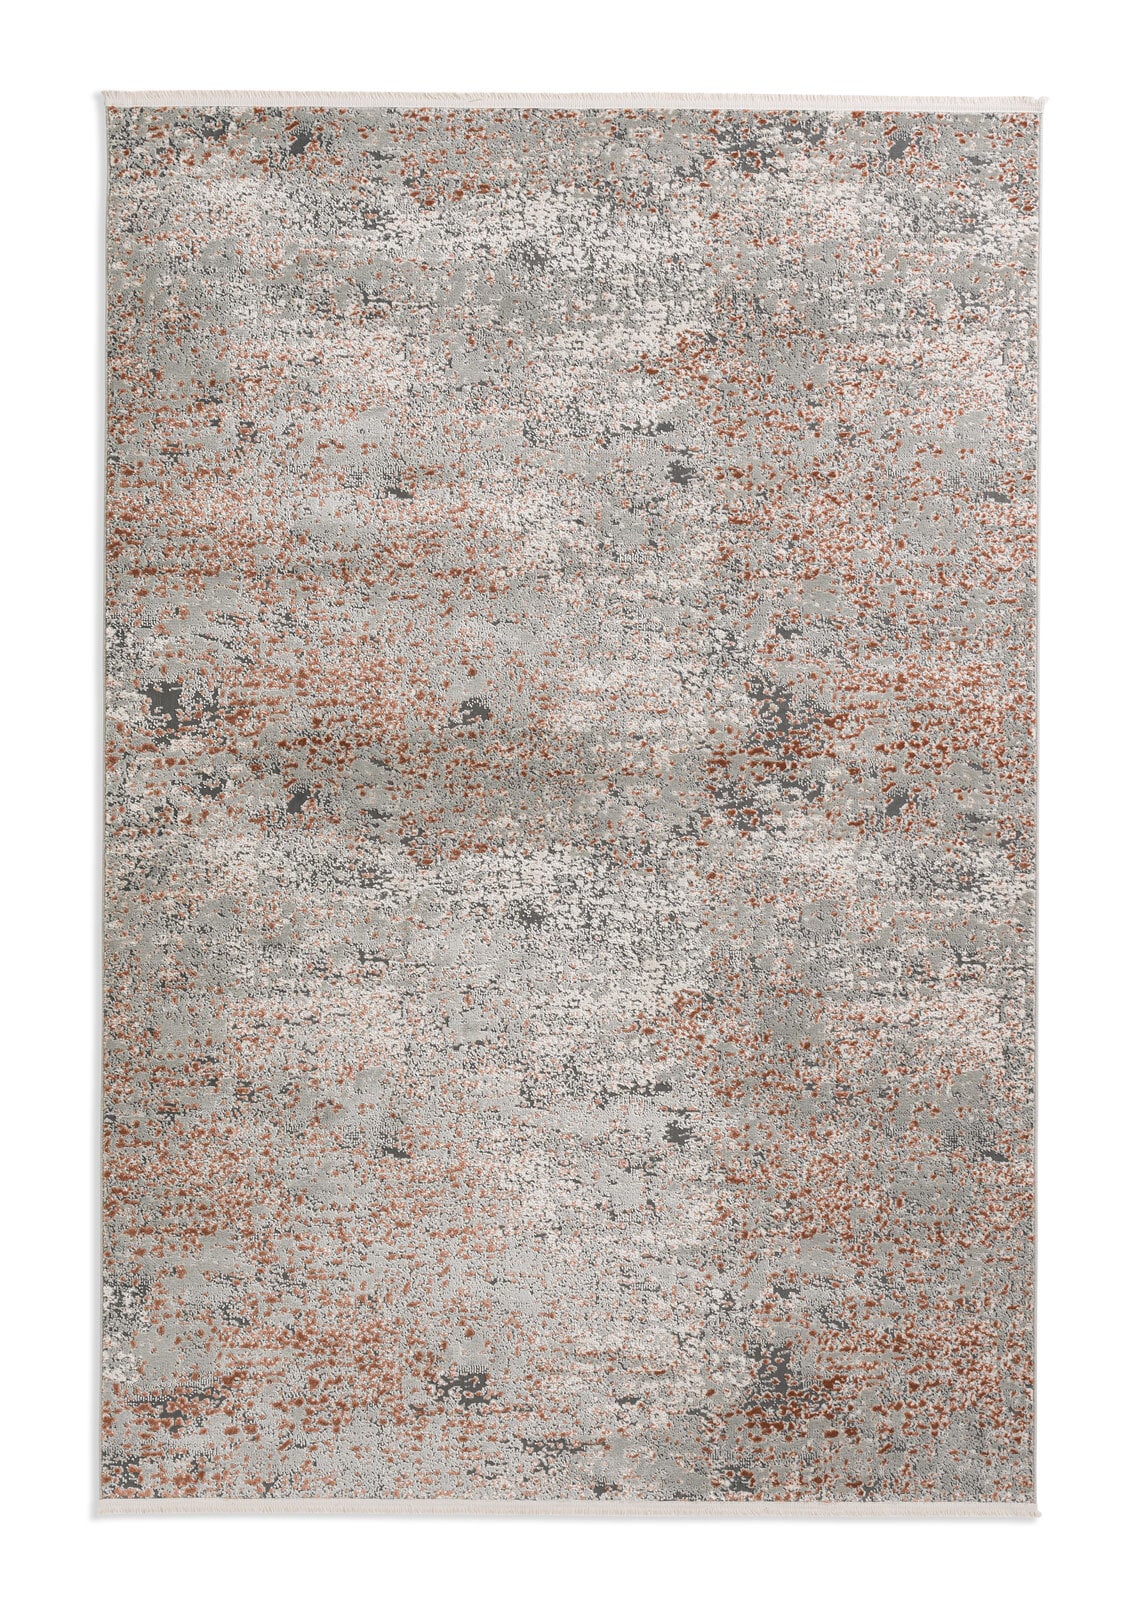 SCHÖNER WOHNEN-Kollektion Teppich ATTRACTION 160 x 230 cm mehrfarbig 